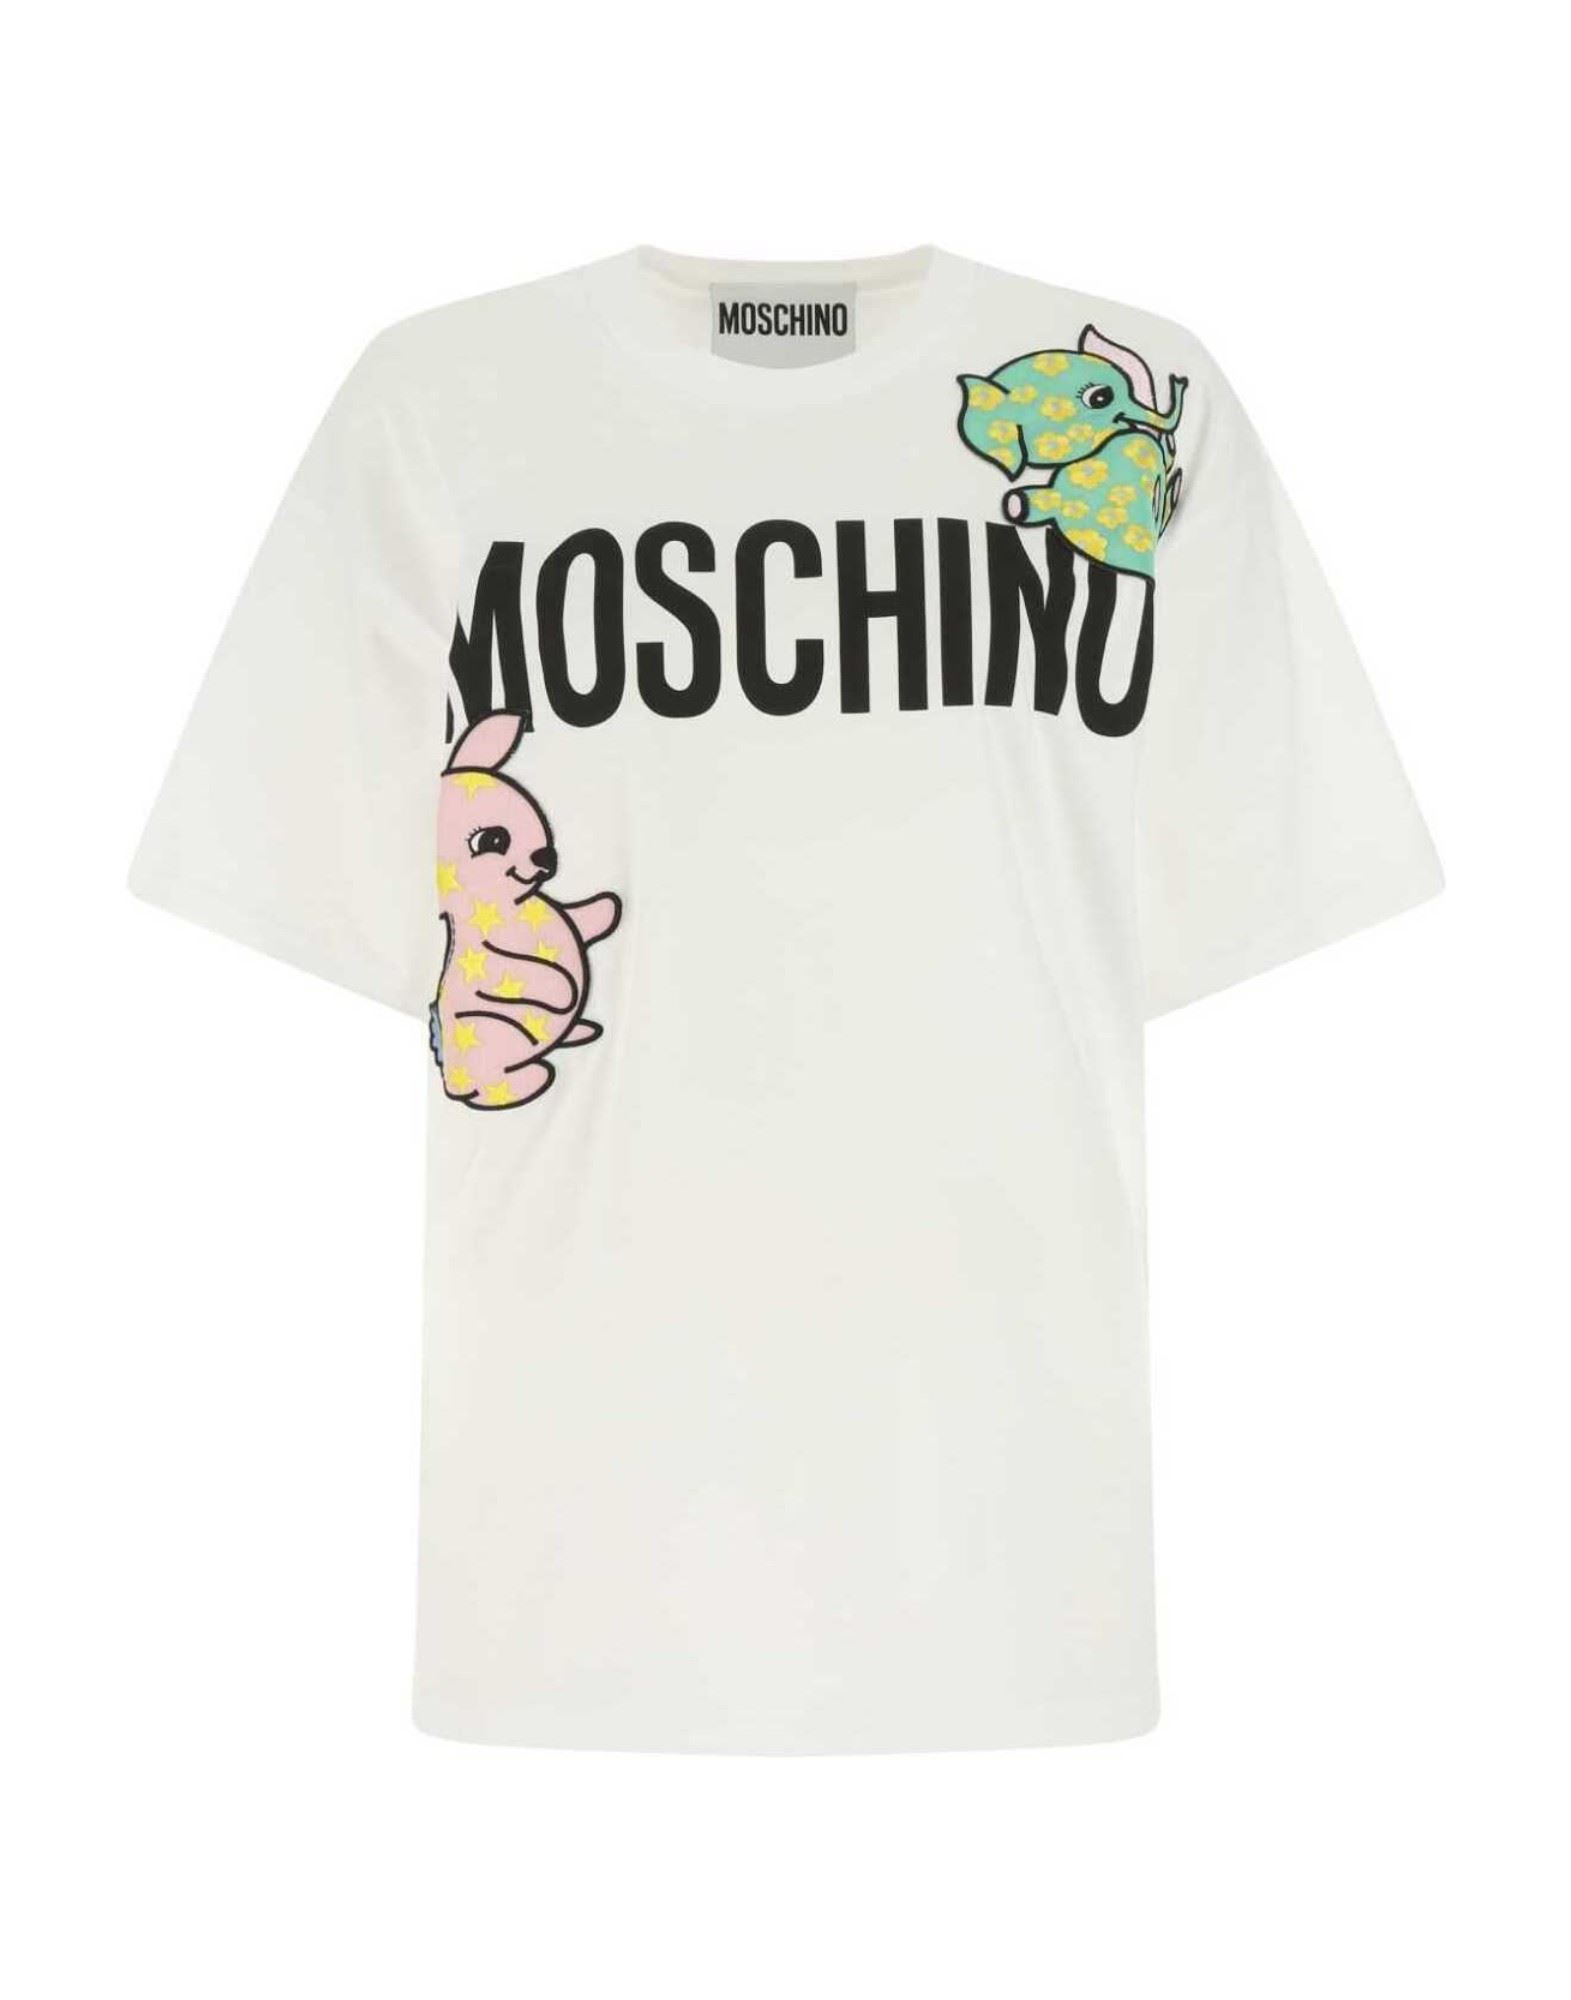 MOSCHINO T-shirts Damen Weiß von MOSCHINO